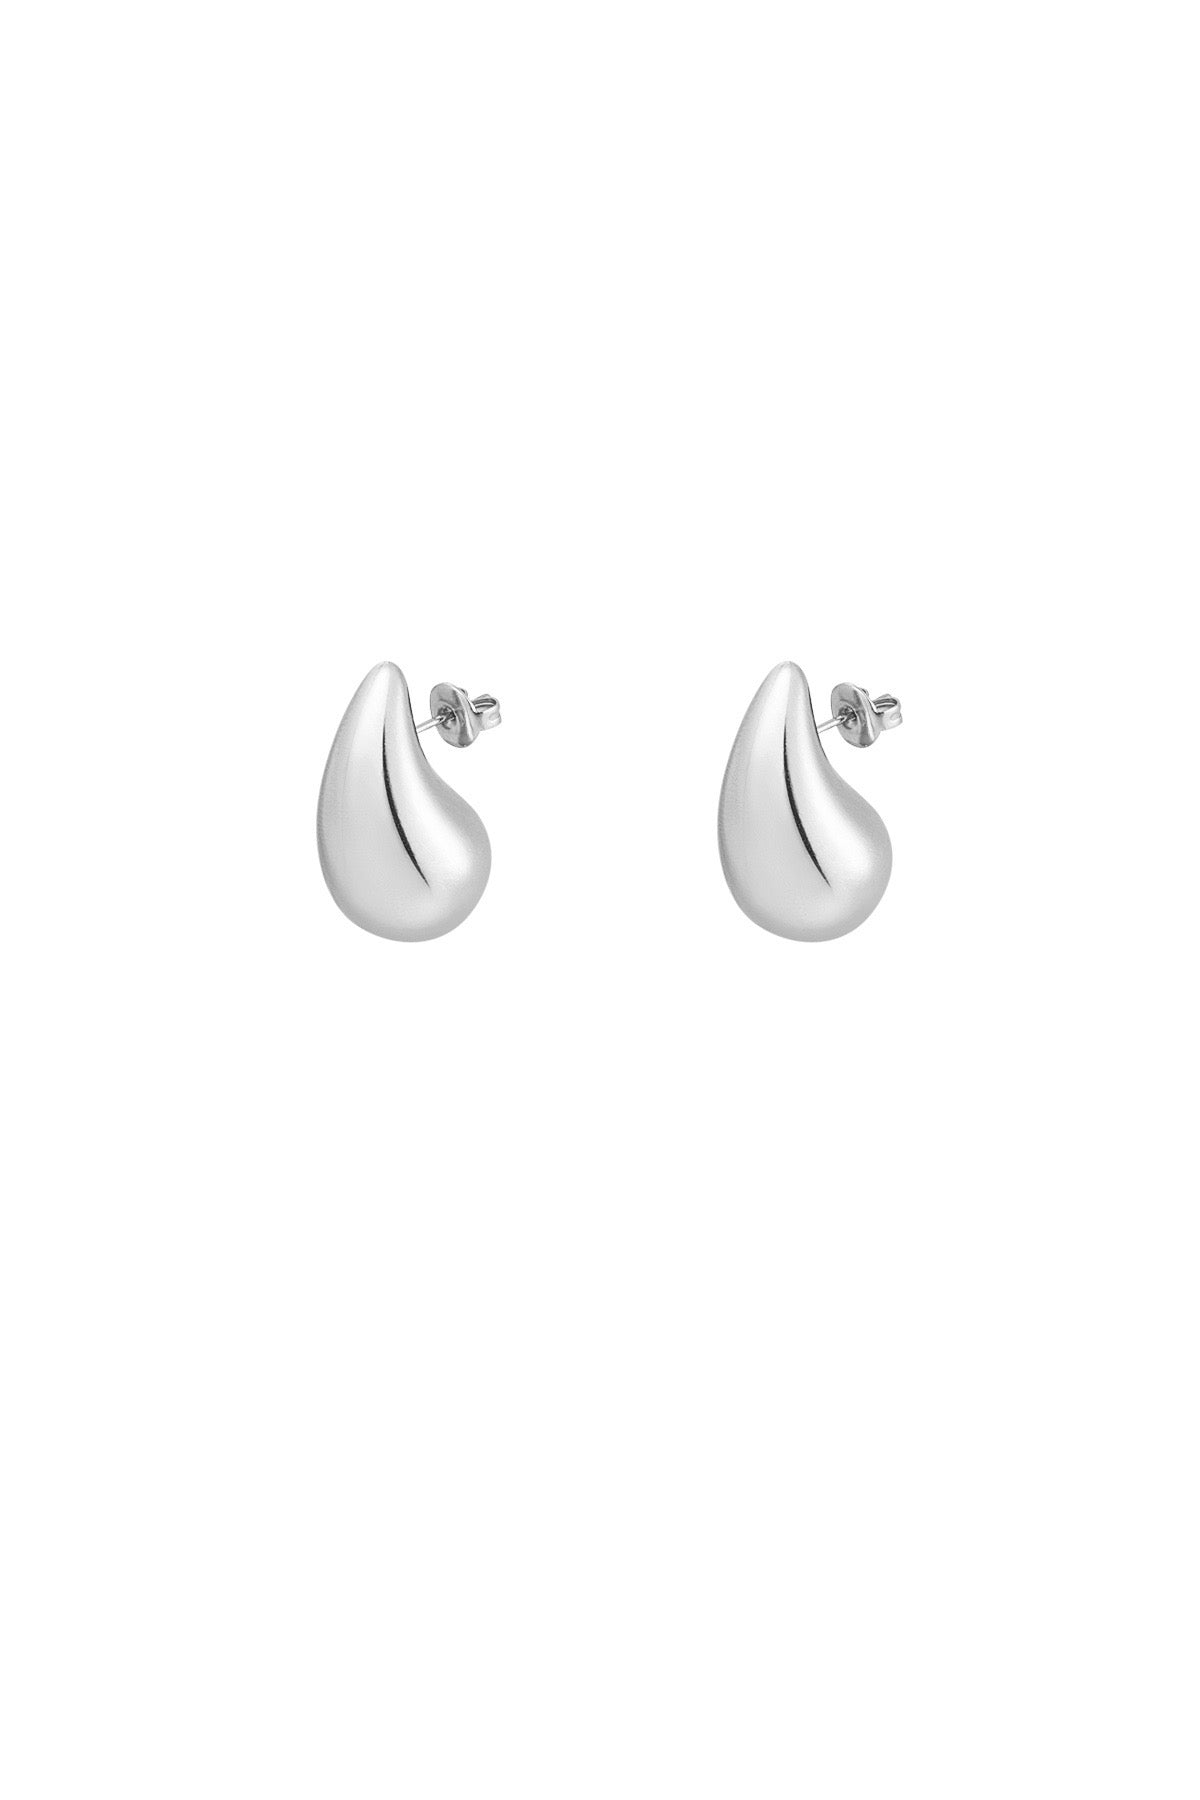 Silver drops - medium (earrings)